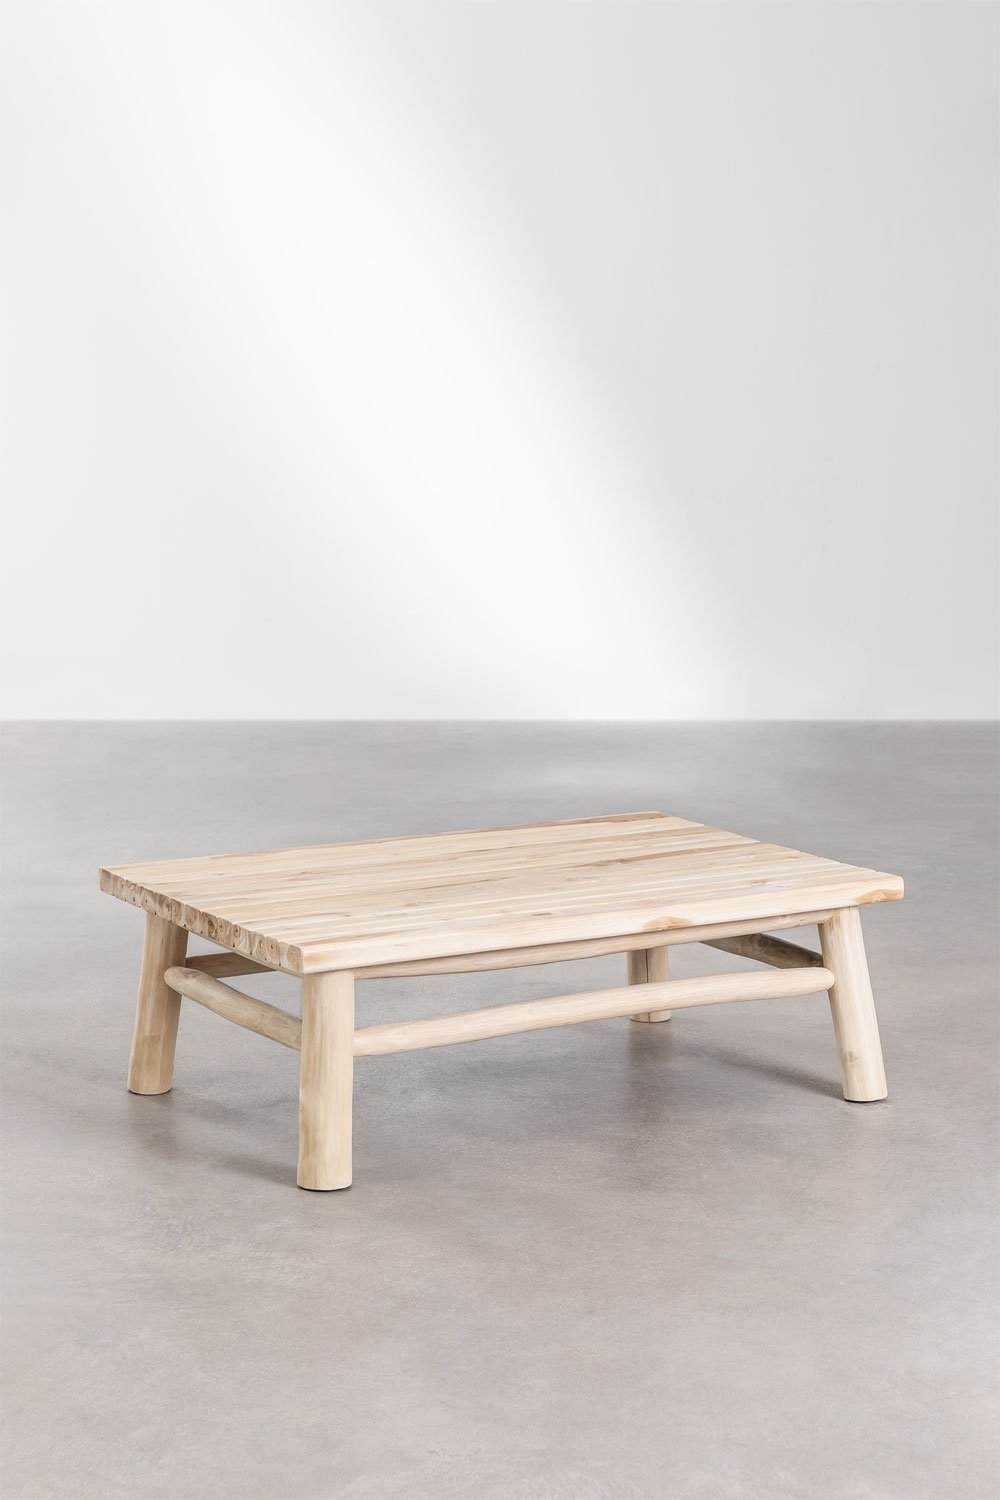 Rechthoekige salontafel voor tuin (120x80 cm) Narel, galerij beeld 1